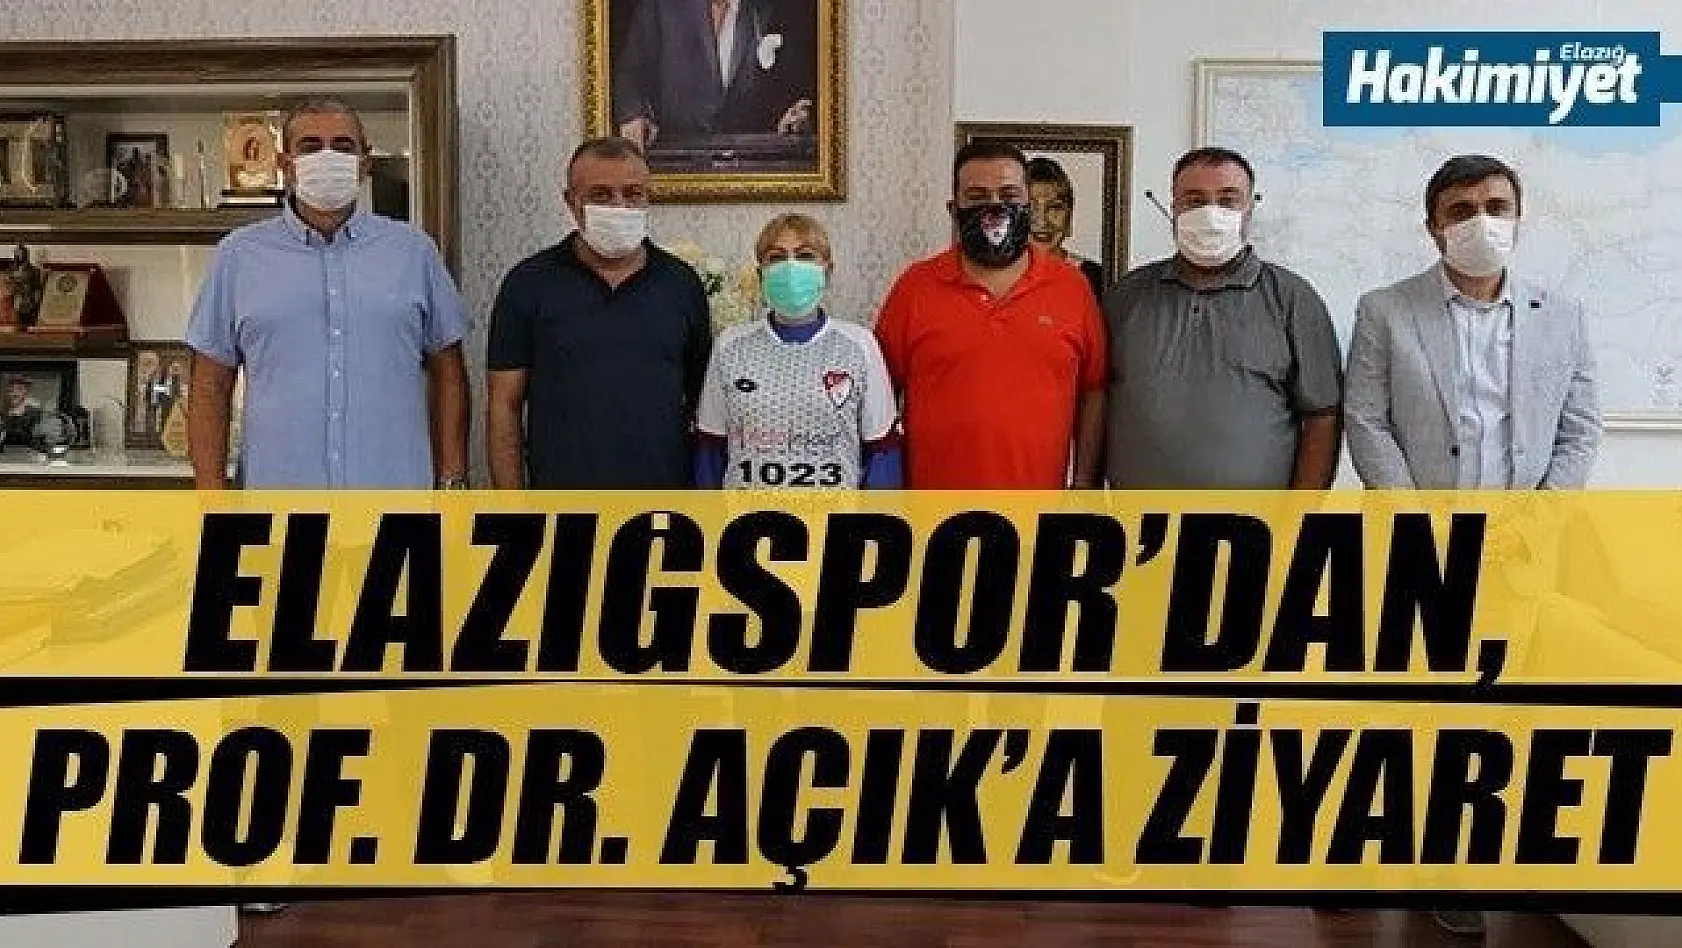 Elazığspor'dan, Prof. Dr. Açık'a ziyaret